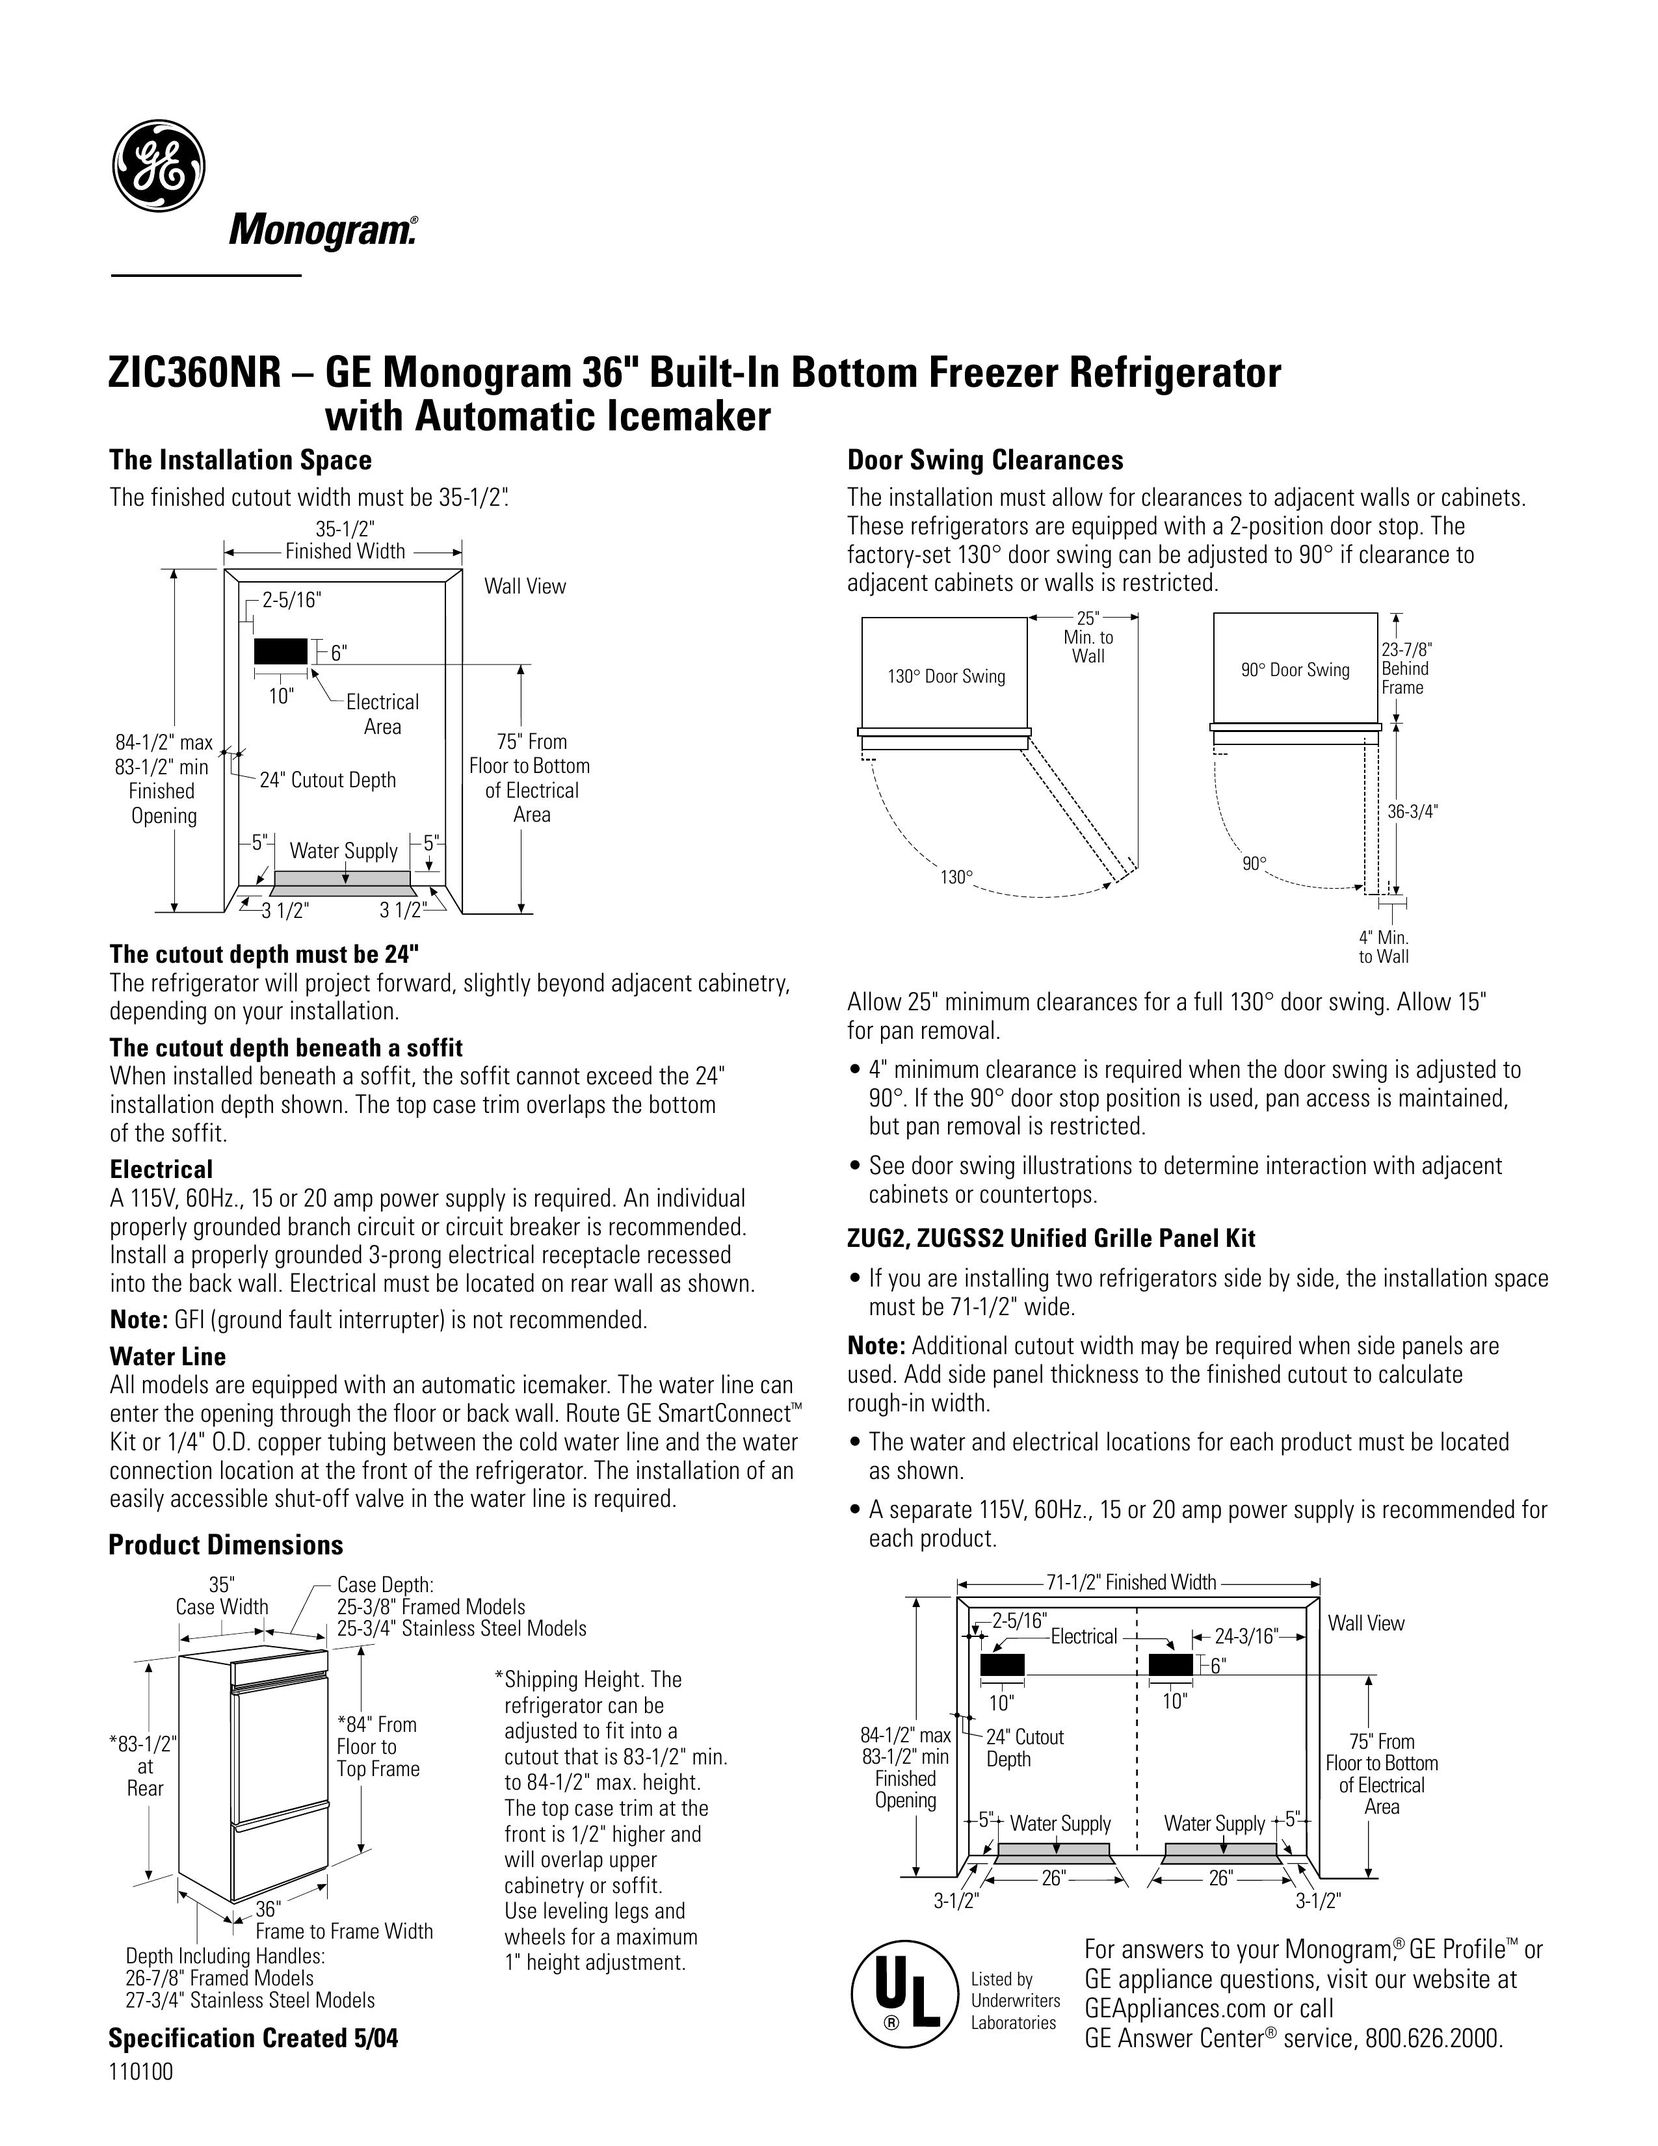 GE Monogram ZIC360NR Speaker User Manual